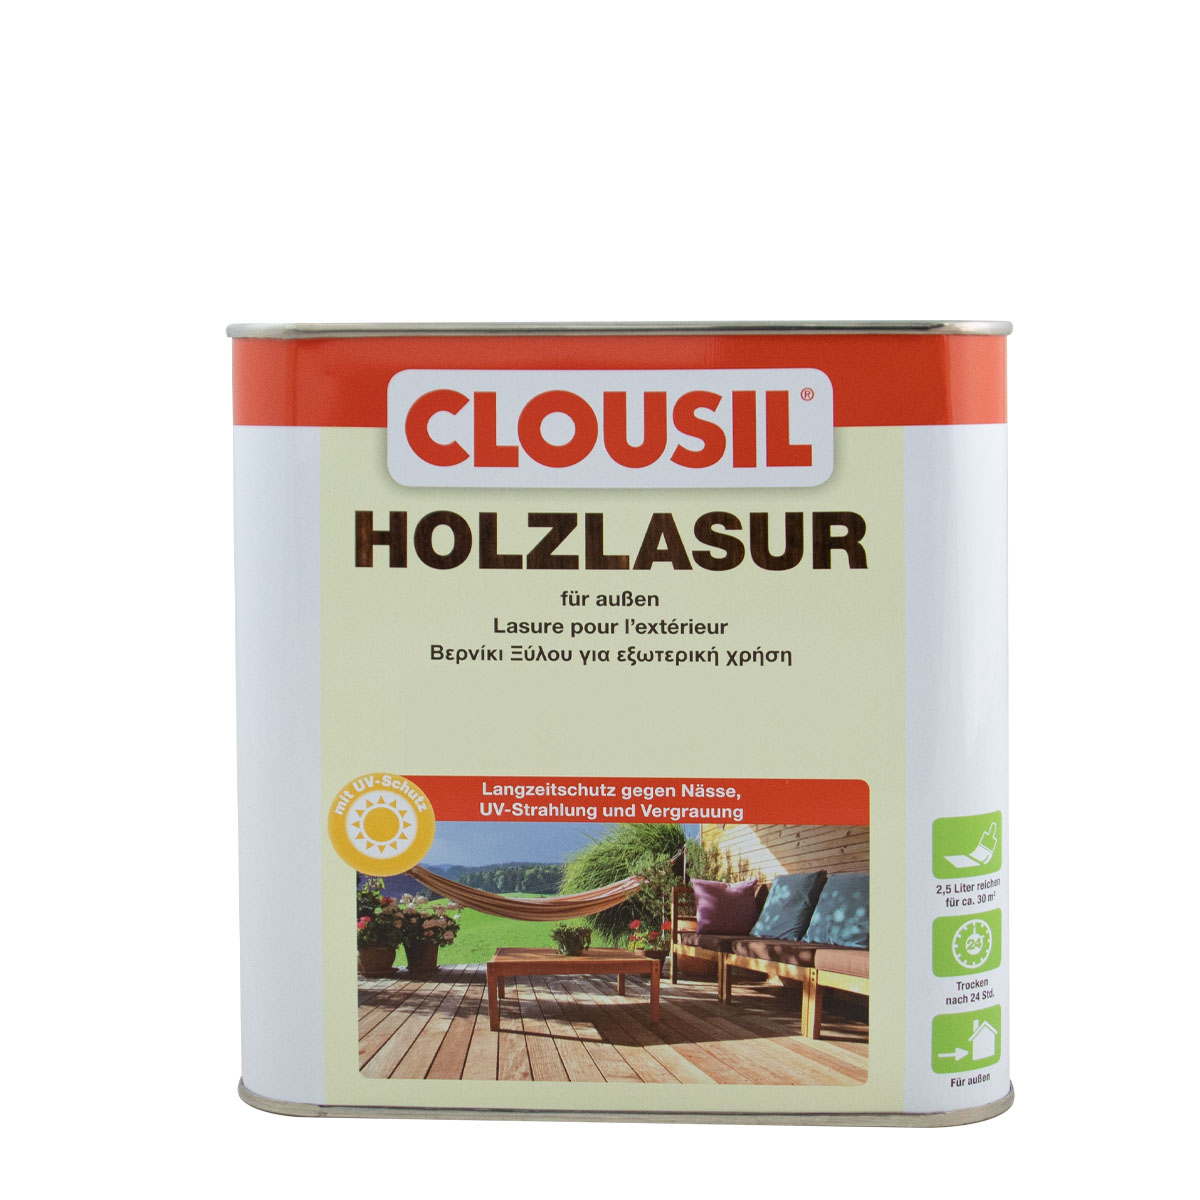 Clousil Holzlasur 2,5L natur, für außen, schützt vor Witterung